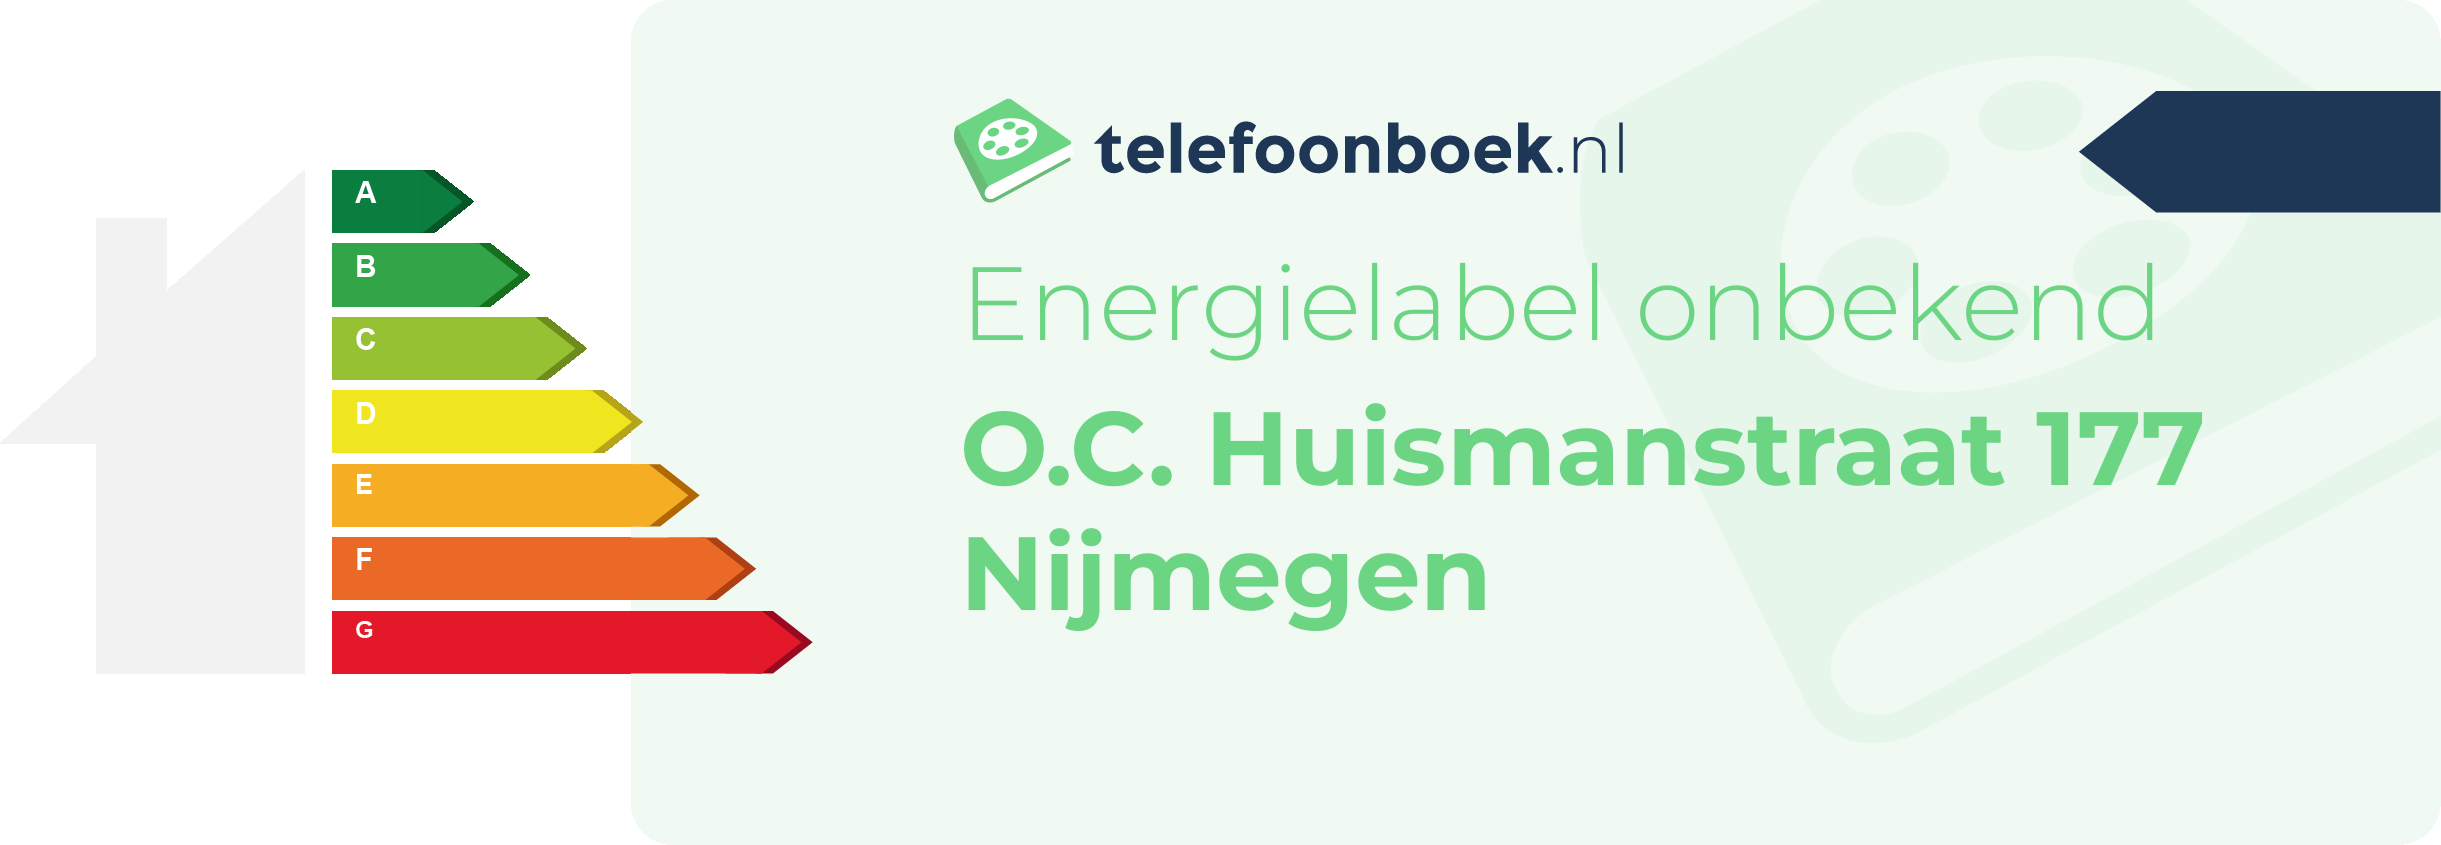 Energielabel O.C. Huismanstraat 177 Nijmegen